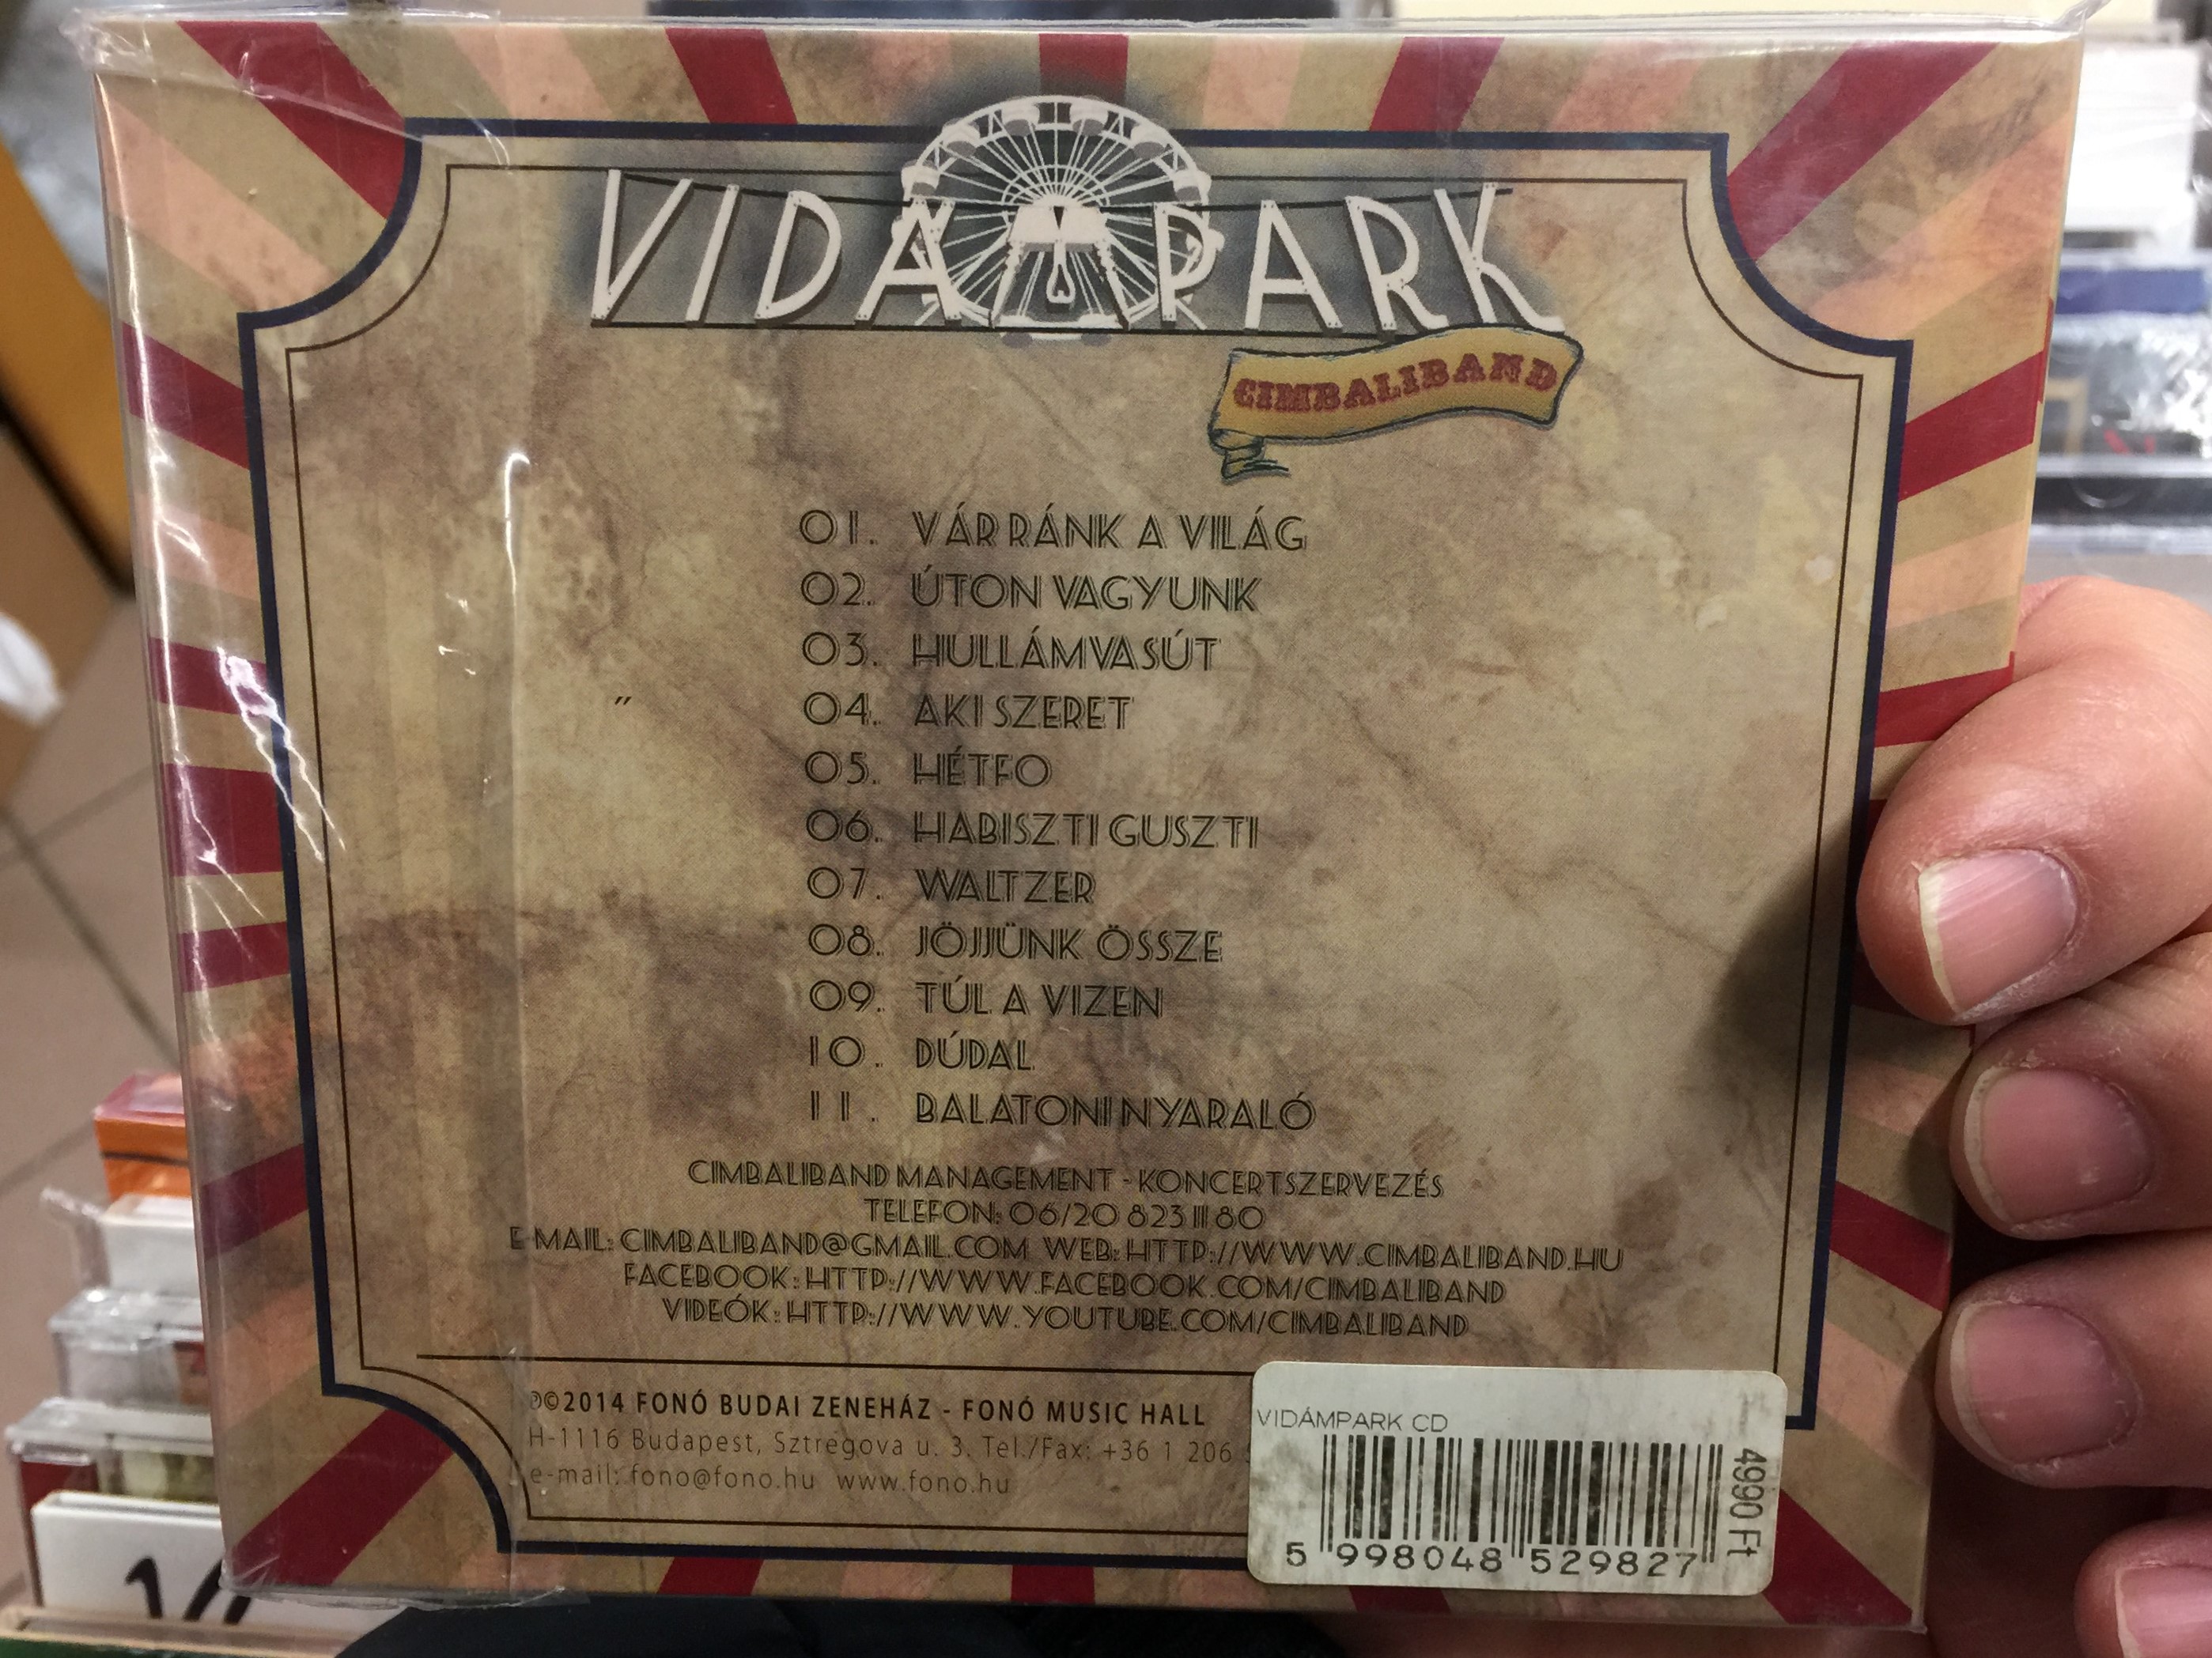 cimbaliband-vid-mpark-fon-records-audio-cd-2014-fa298-2-2-.jpg